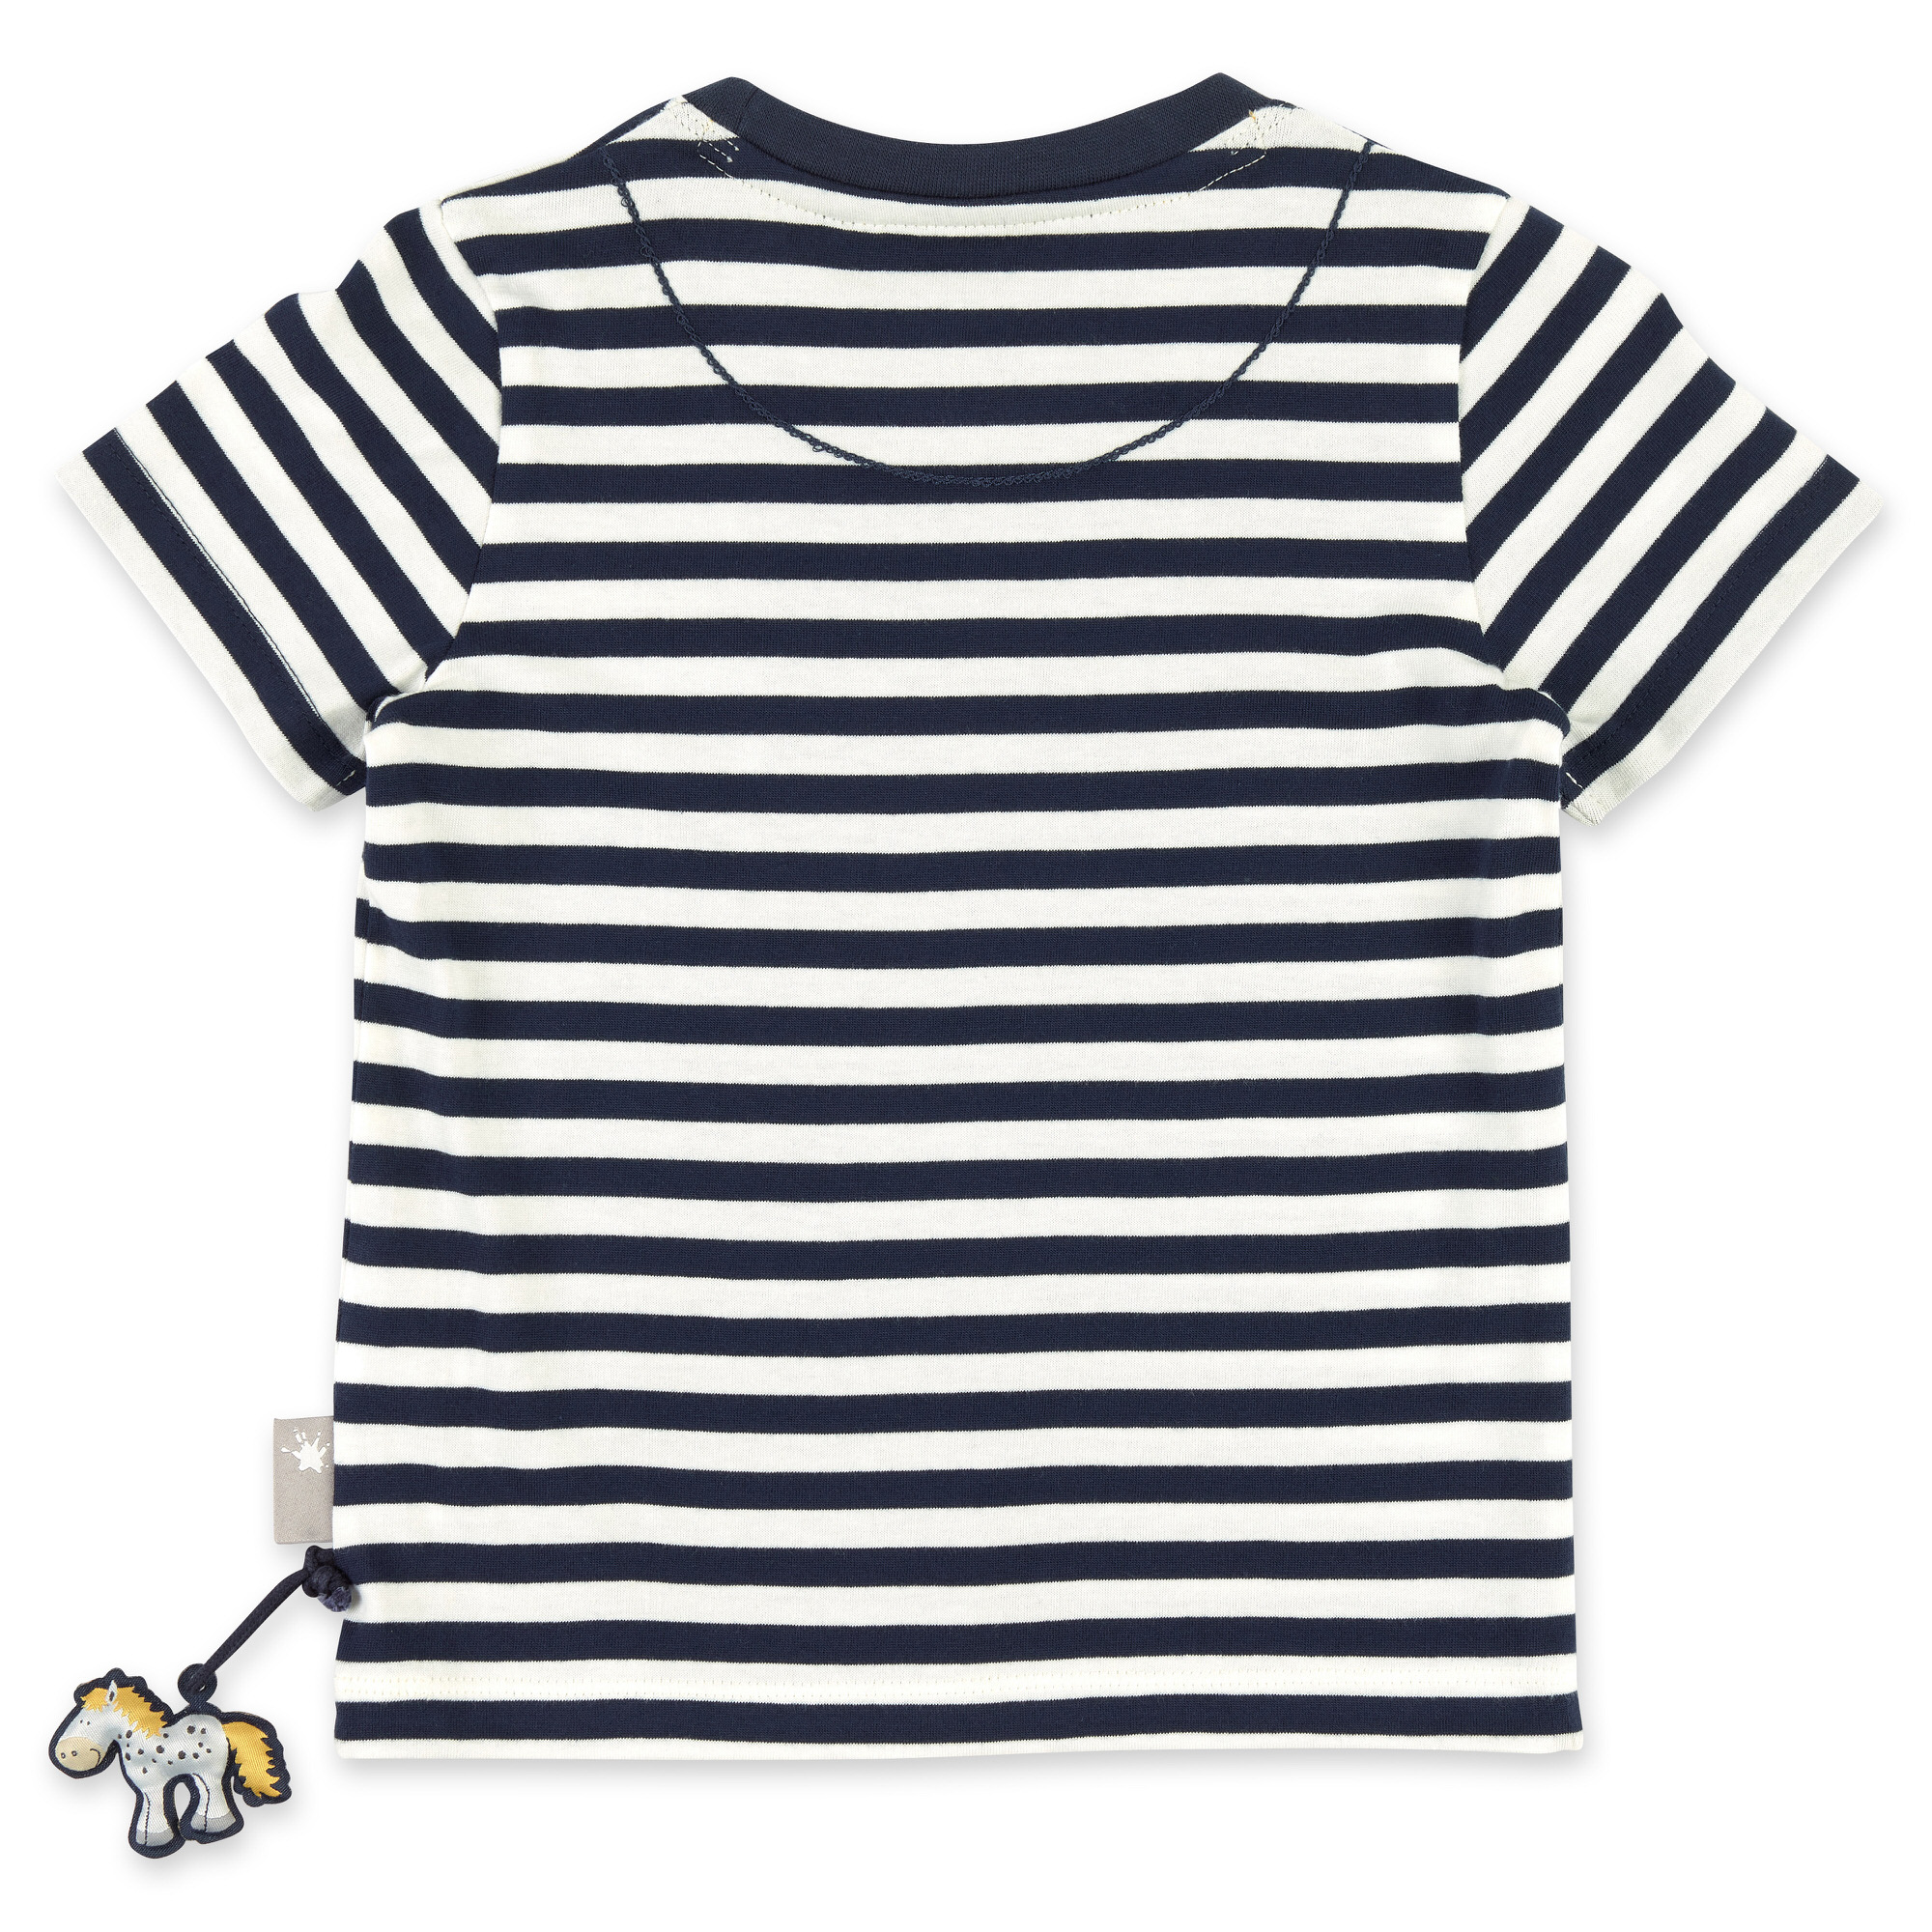 Blau-weiß geringeltes Kinder T-Shirt mit Blümchen bestickt